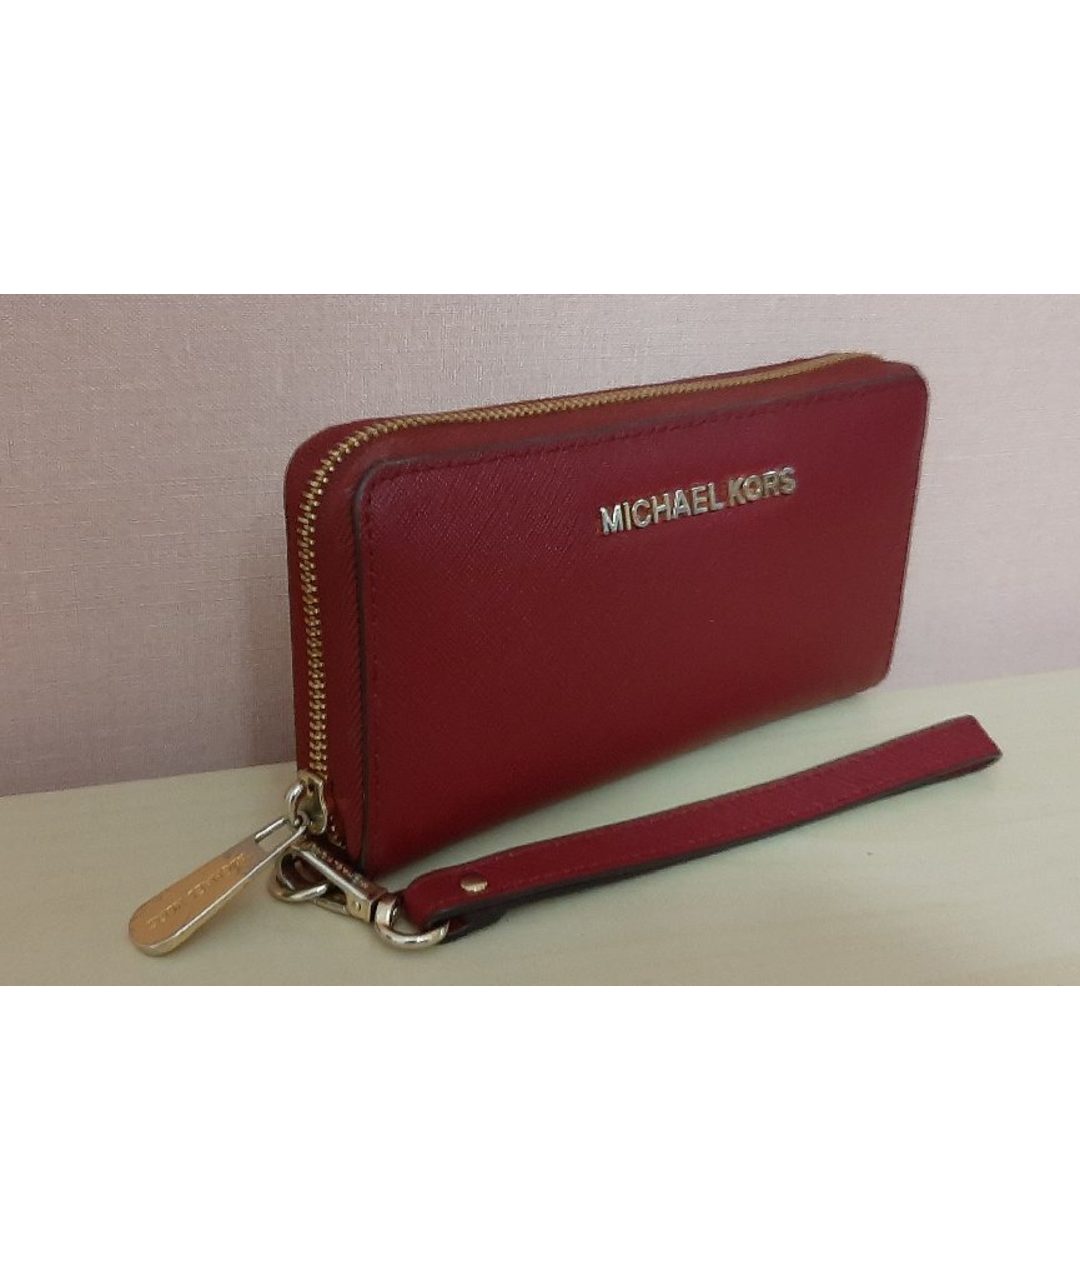 MICHAEL KORS Бордовый кожаный кошелек, фото 2